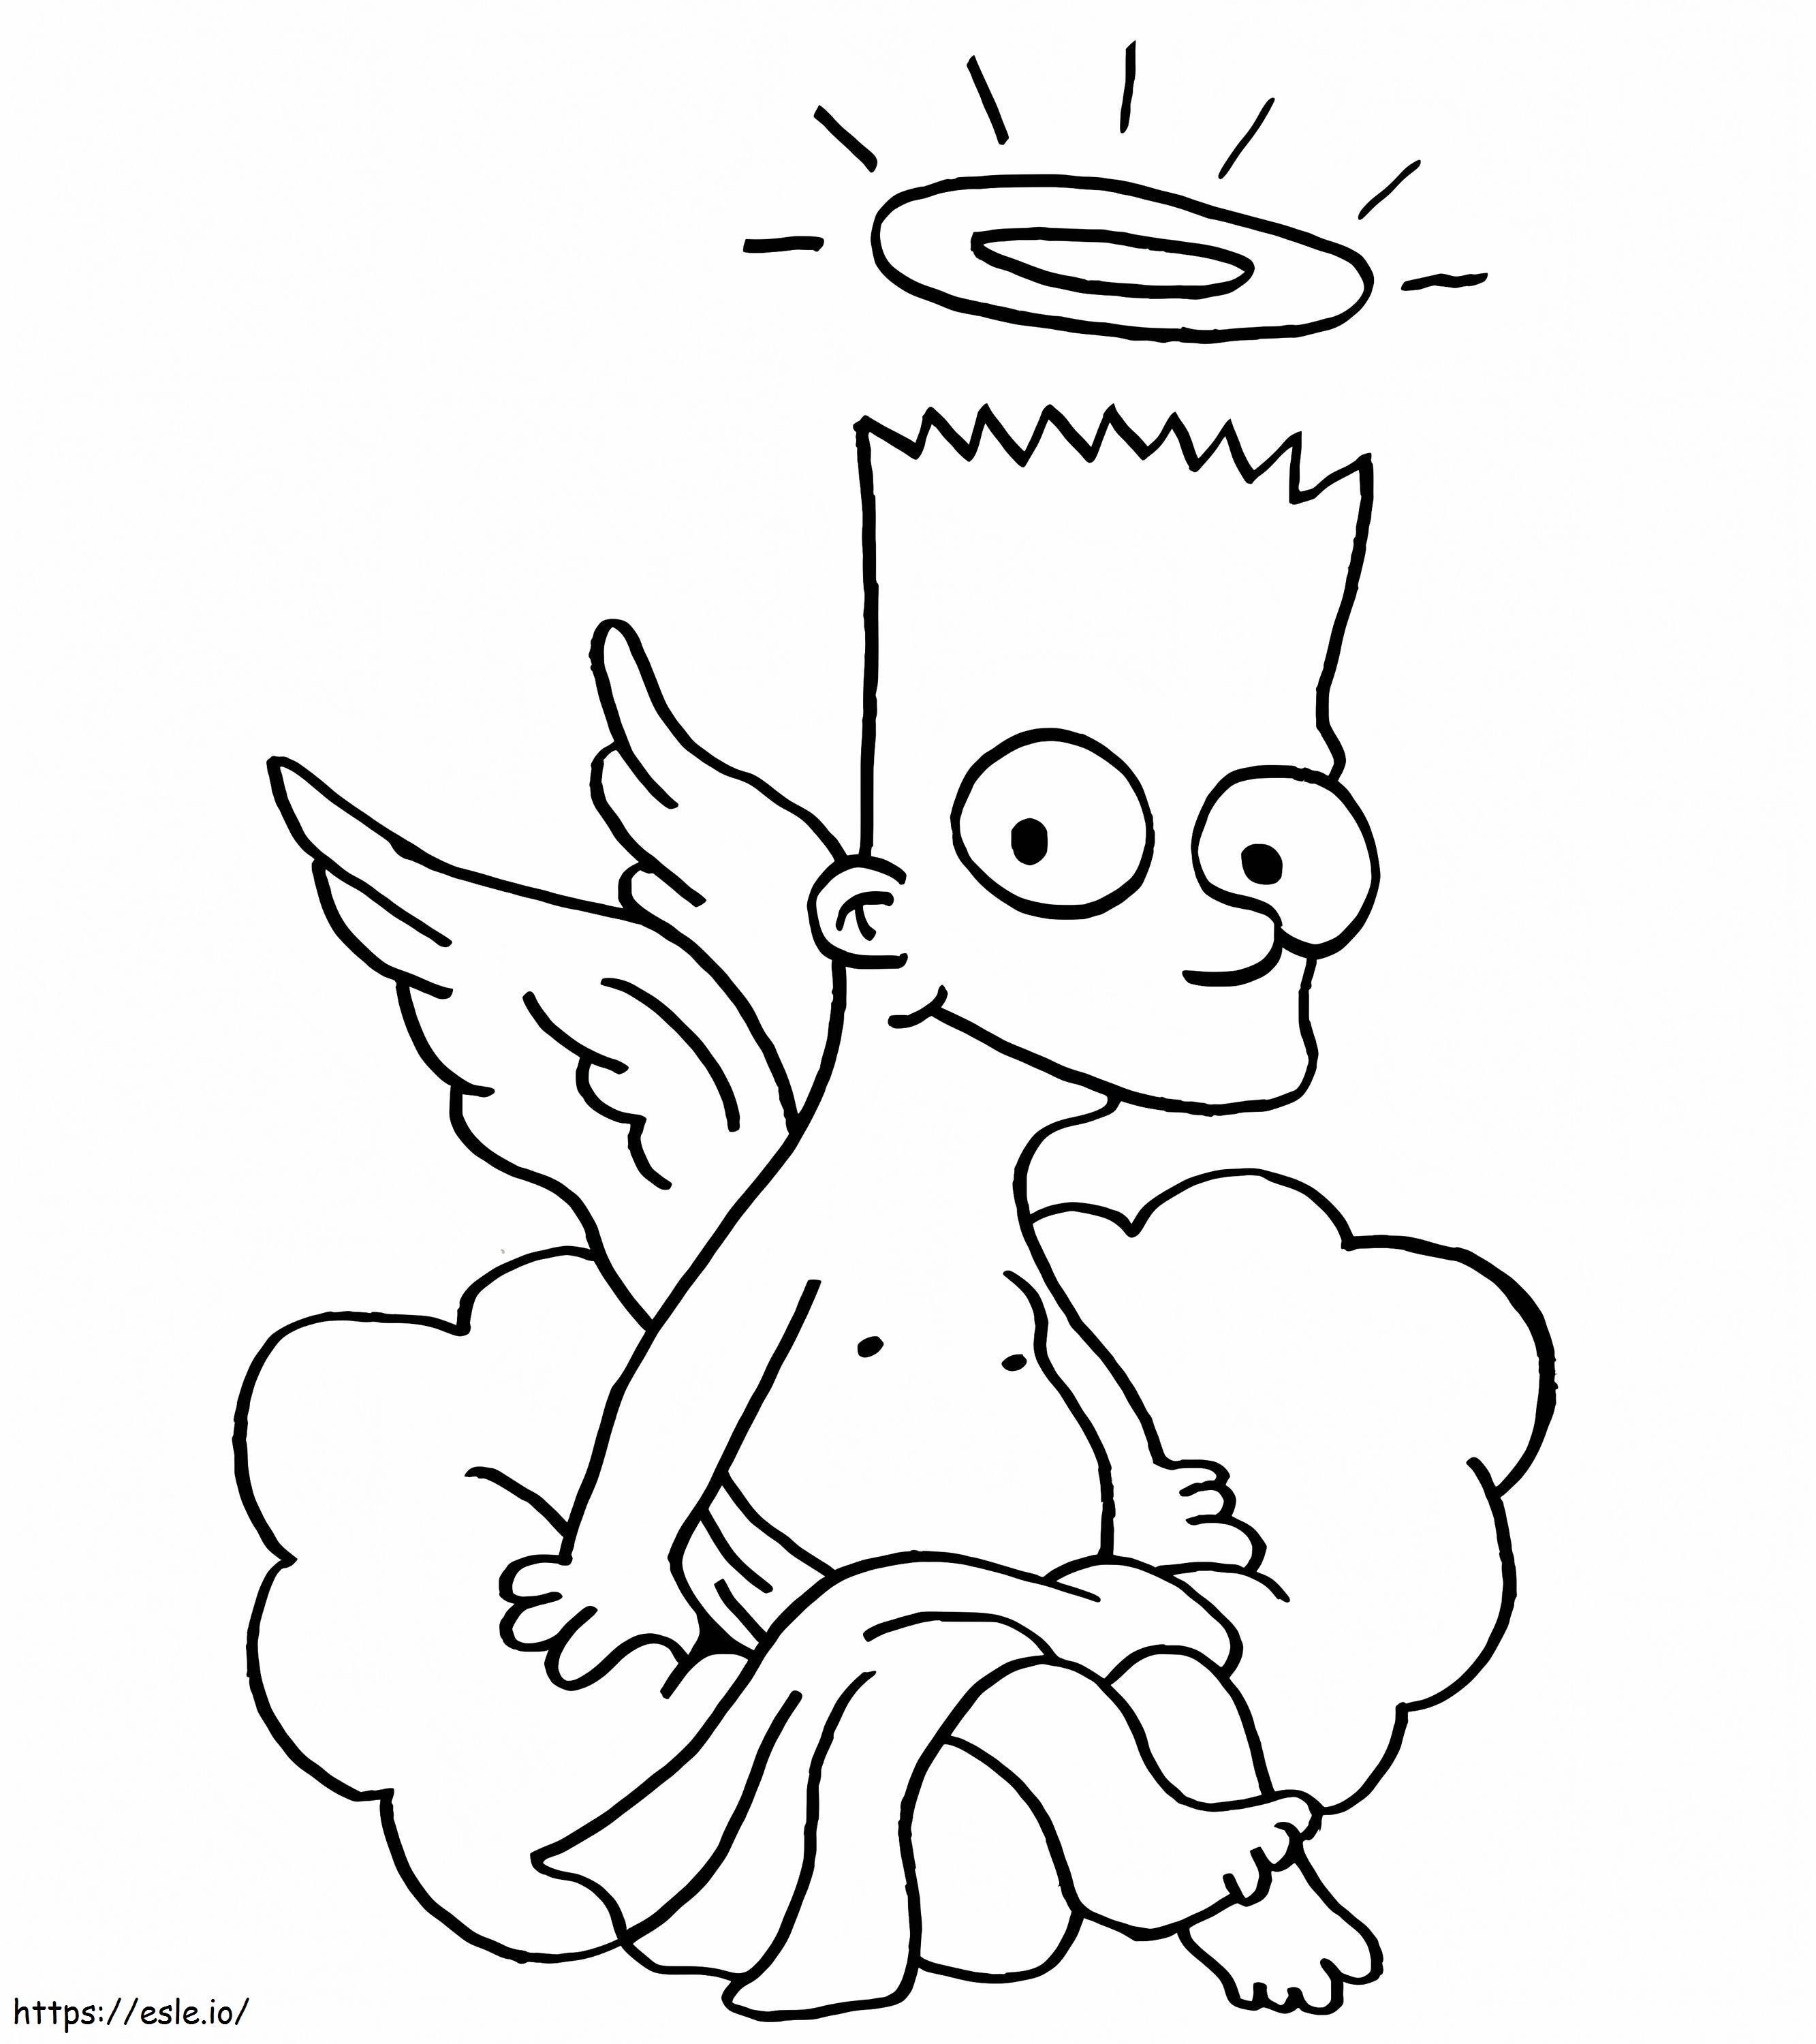 Simpson család angyala kifestő